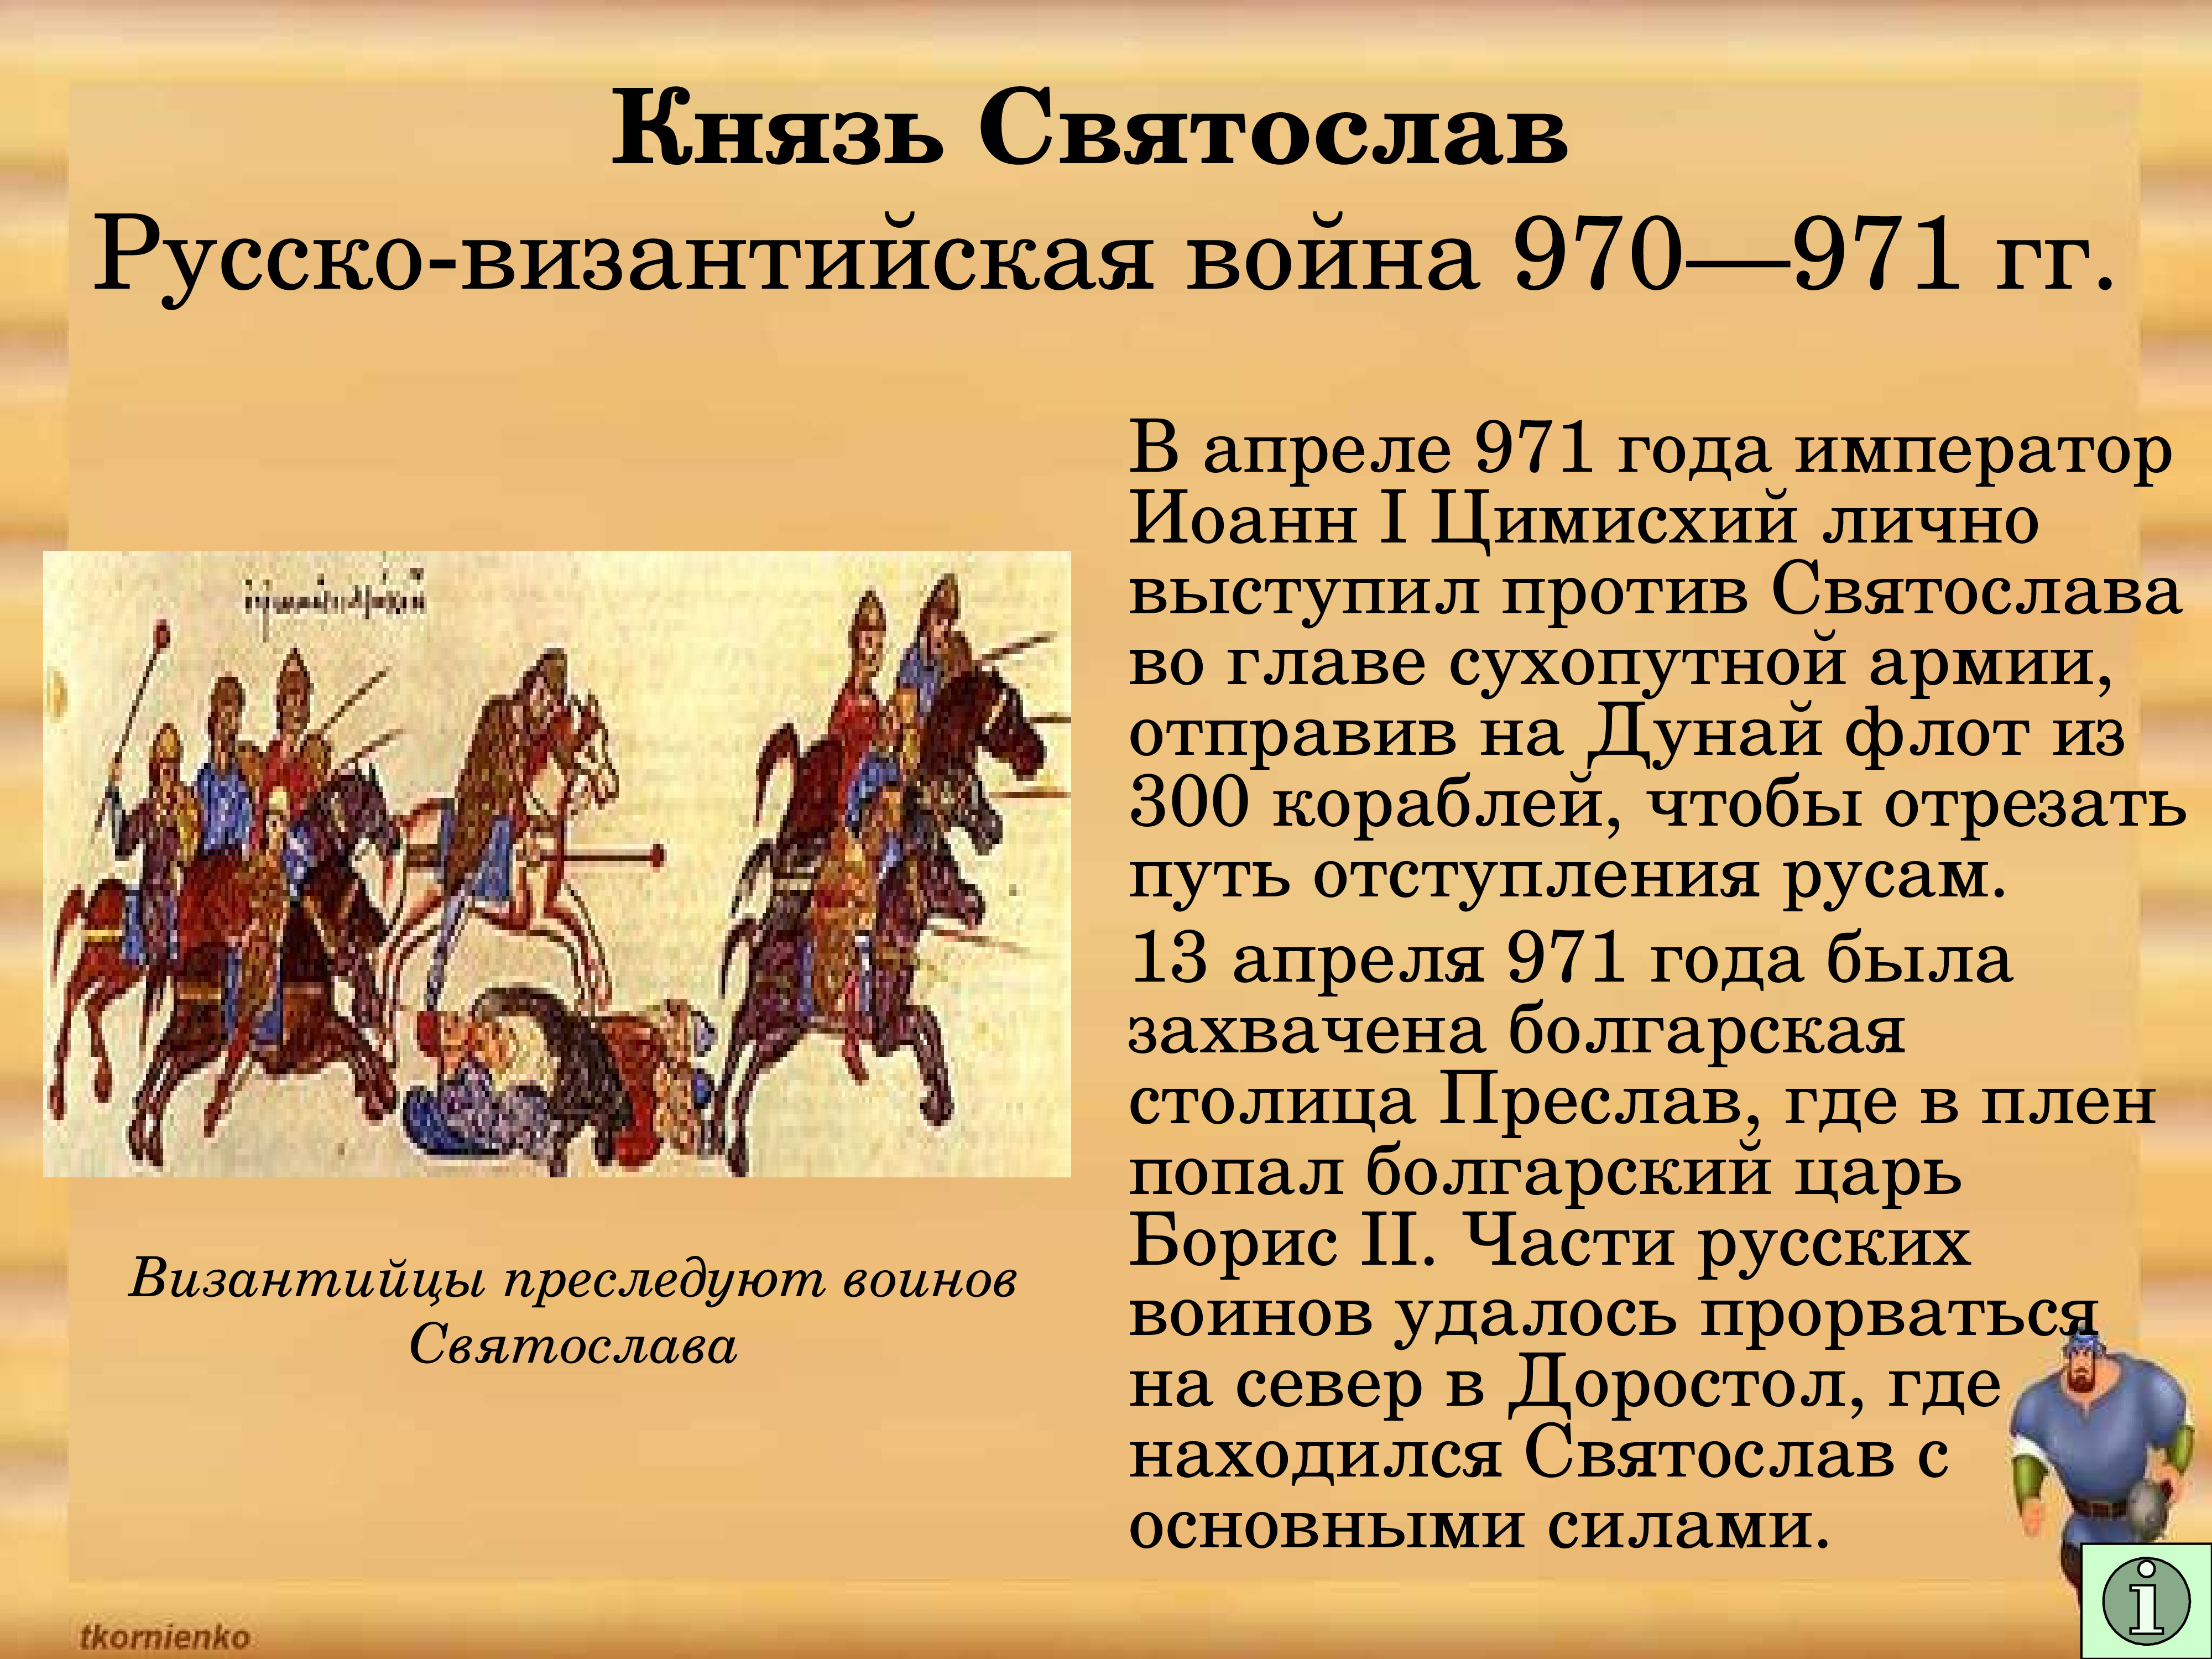 Русско-Византийская война 970-971 годов